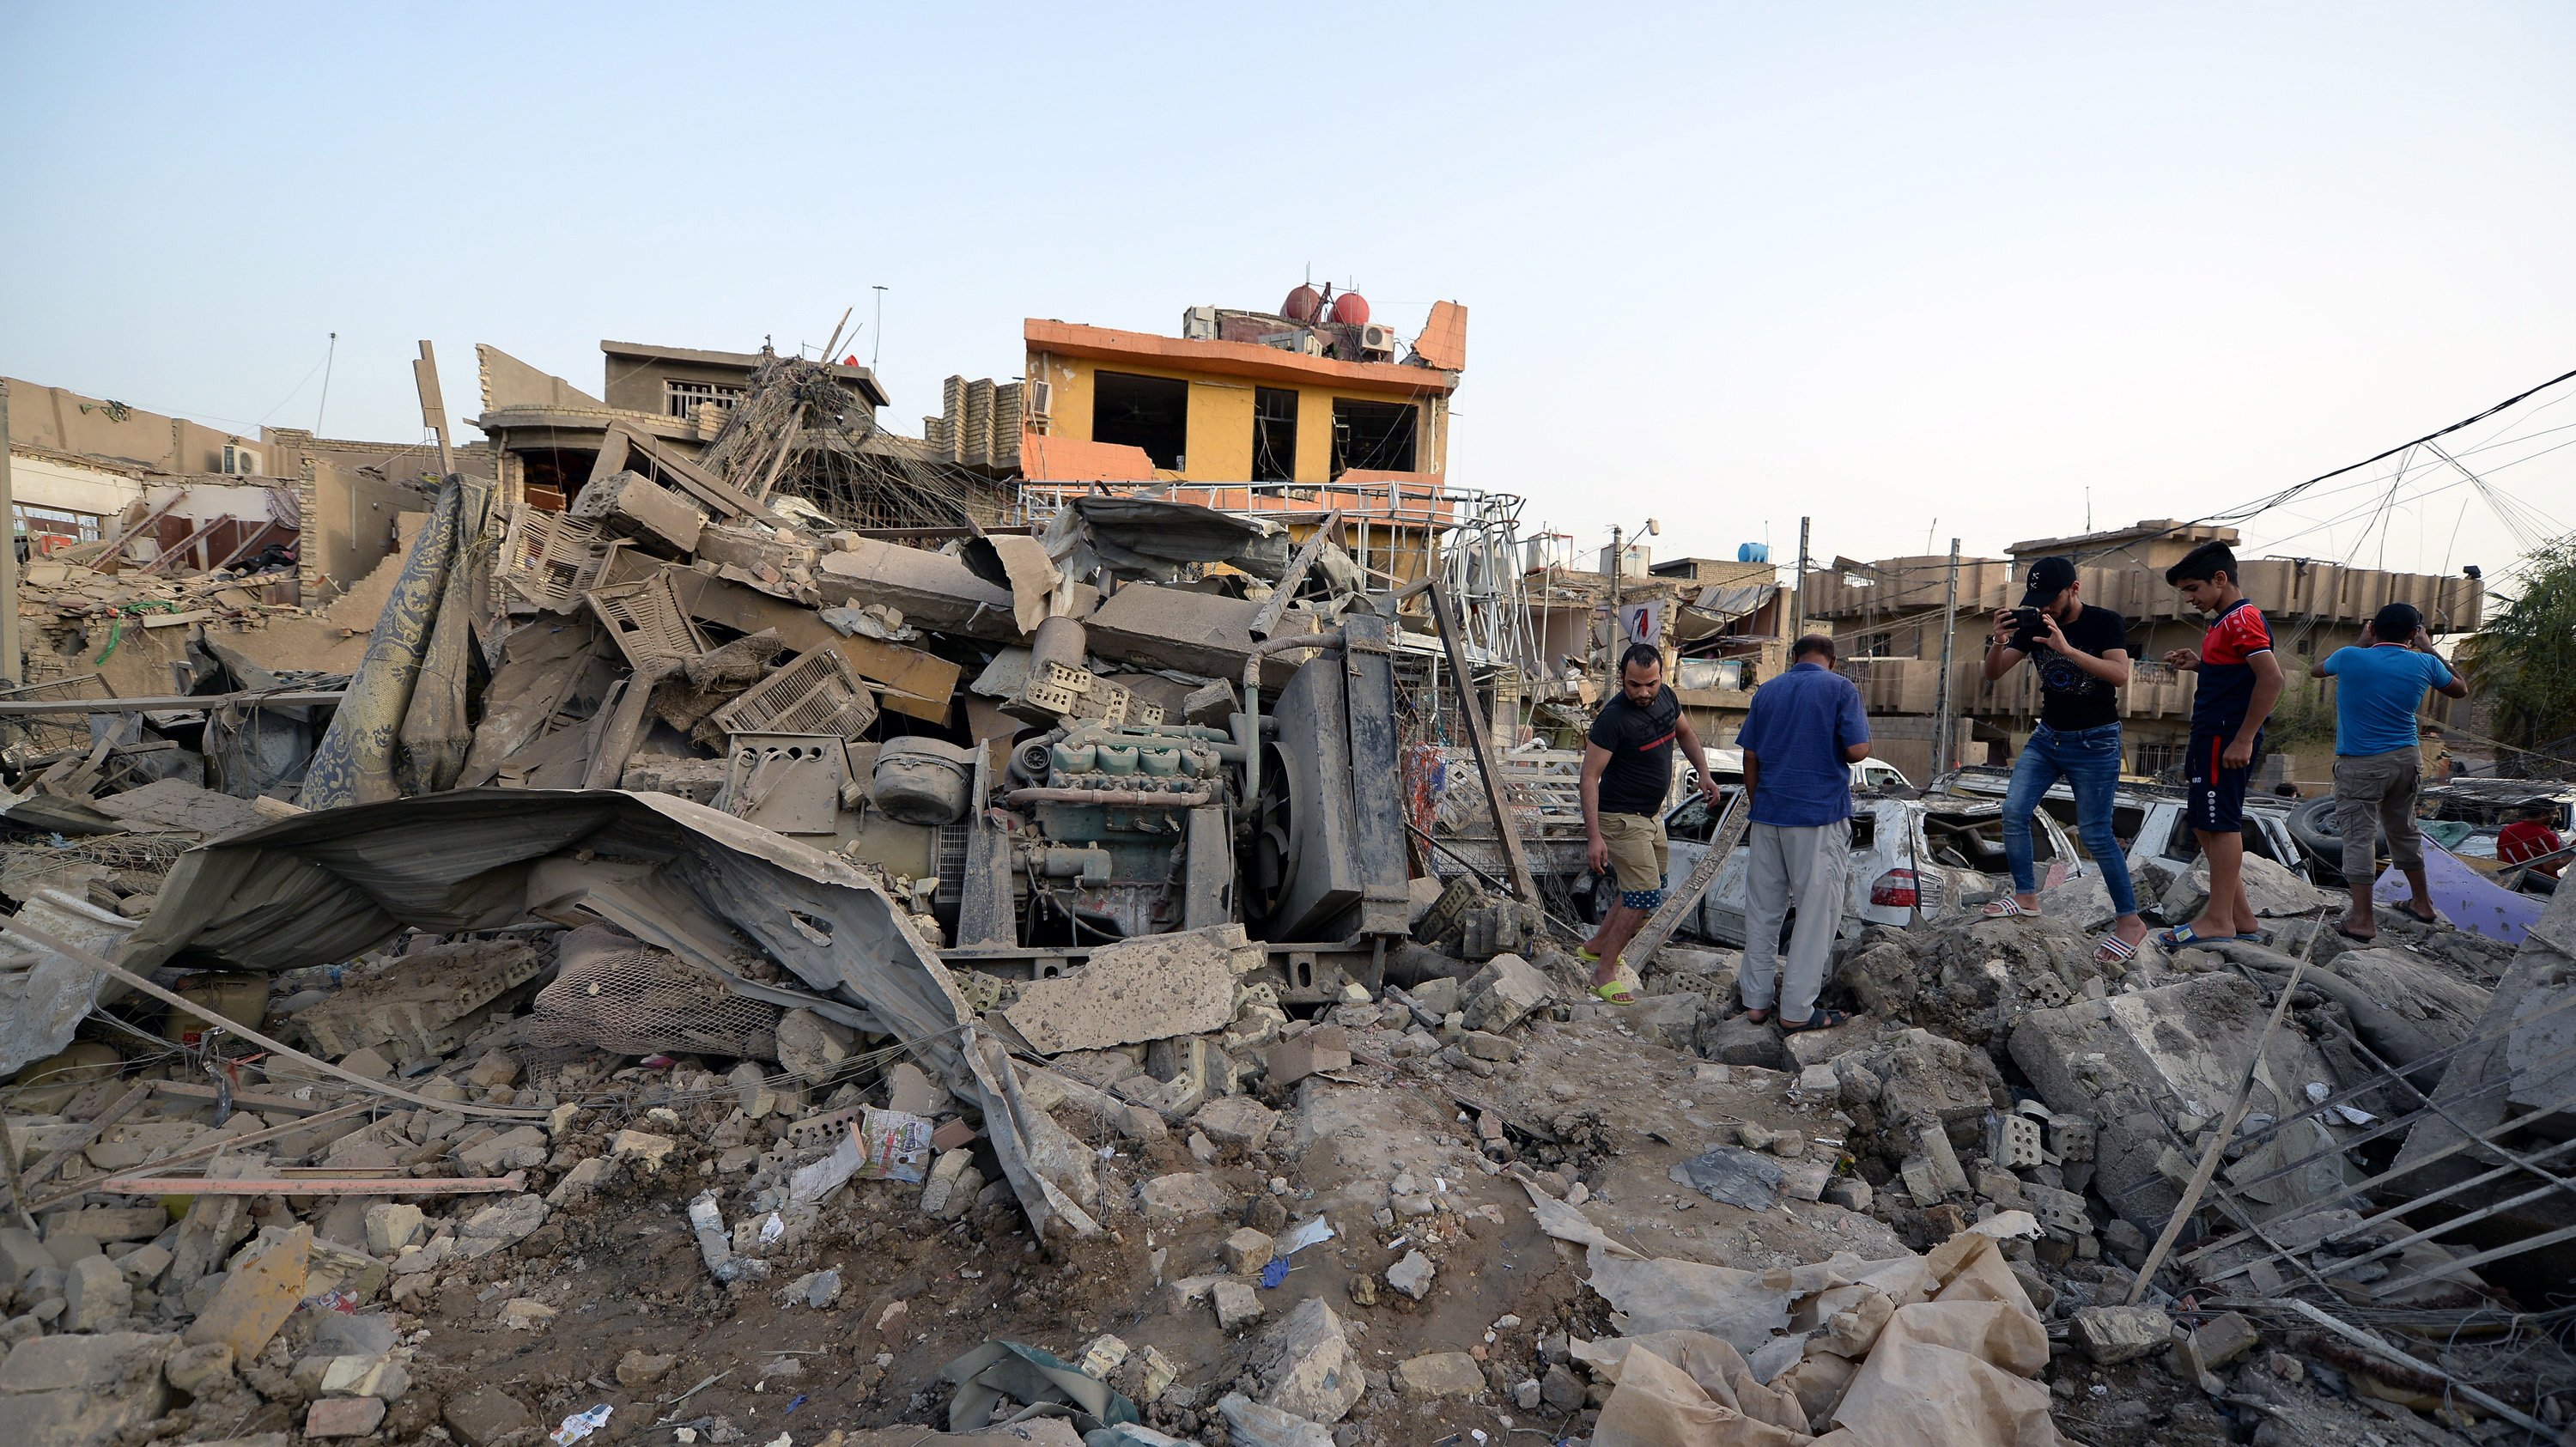 Doze mortos em explosão junto a ministério na capital do Afeganistão